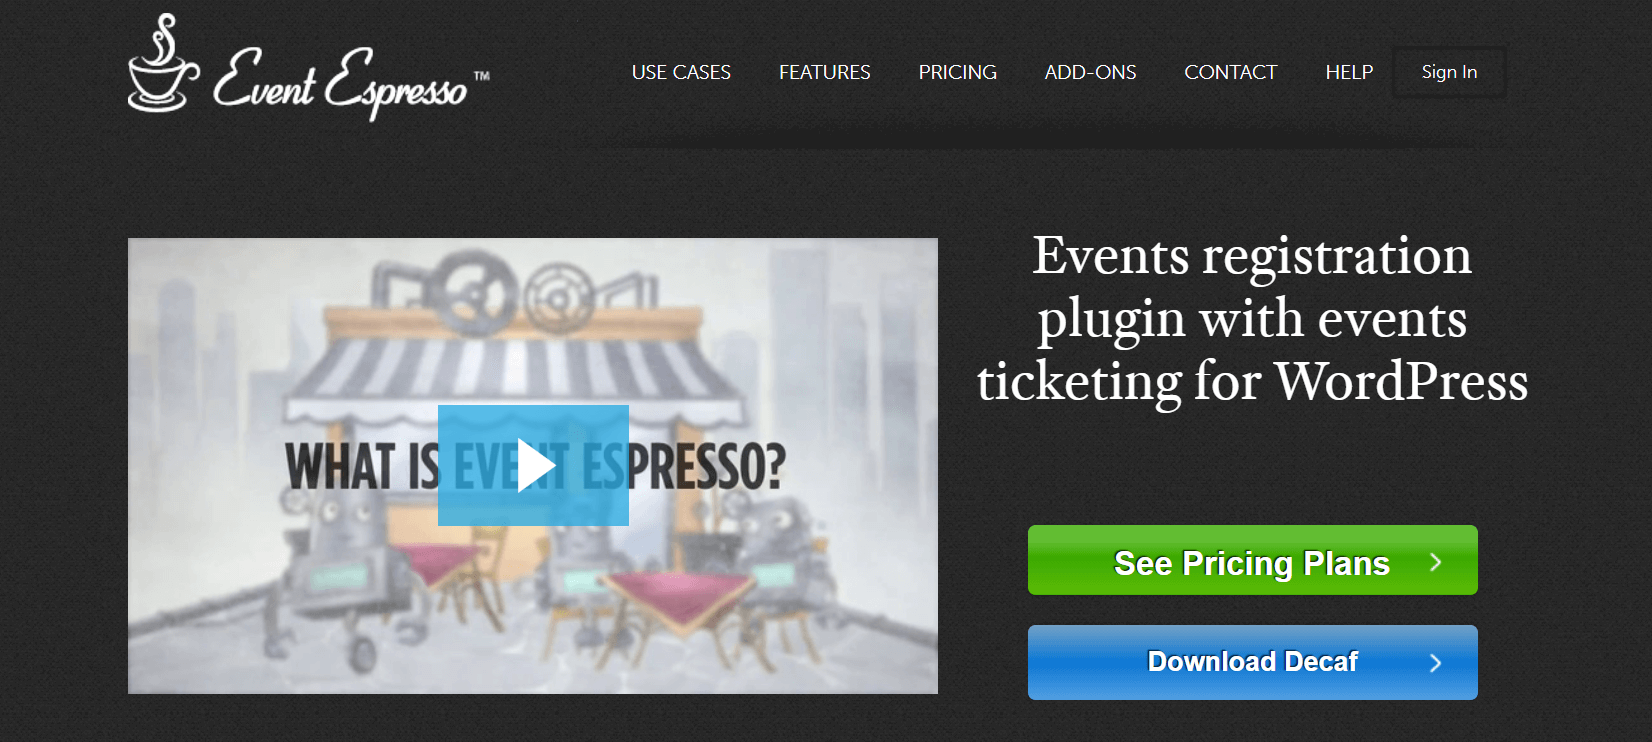 The Event Espresso website.